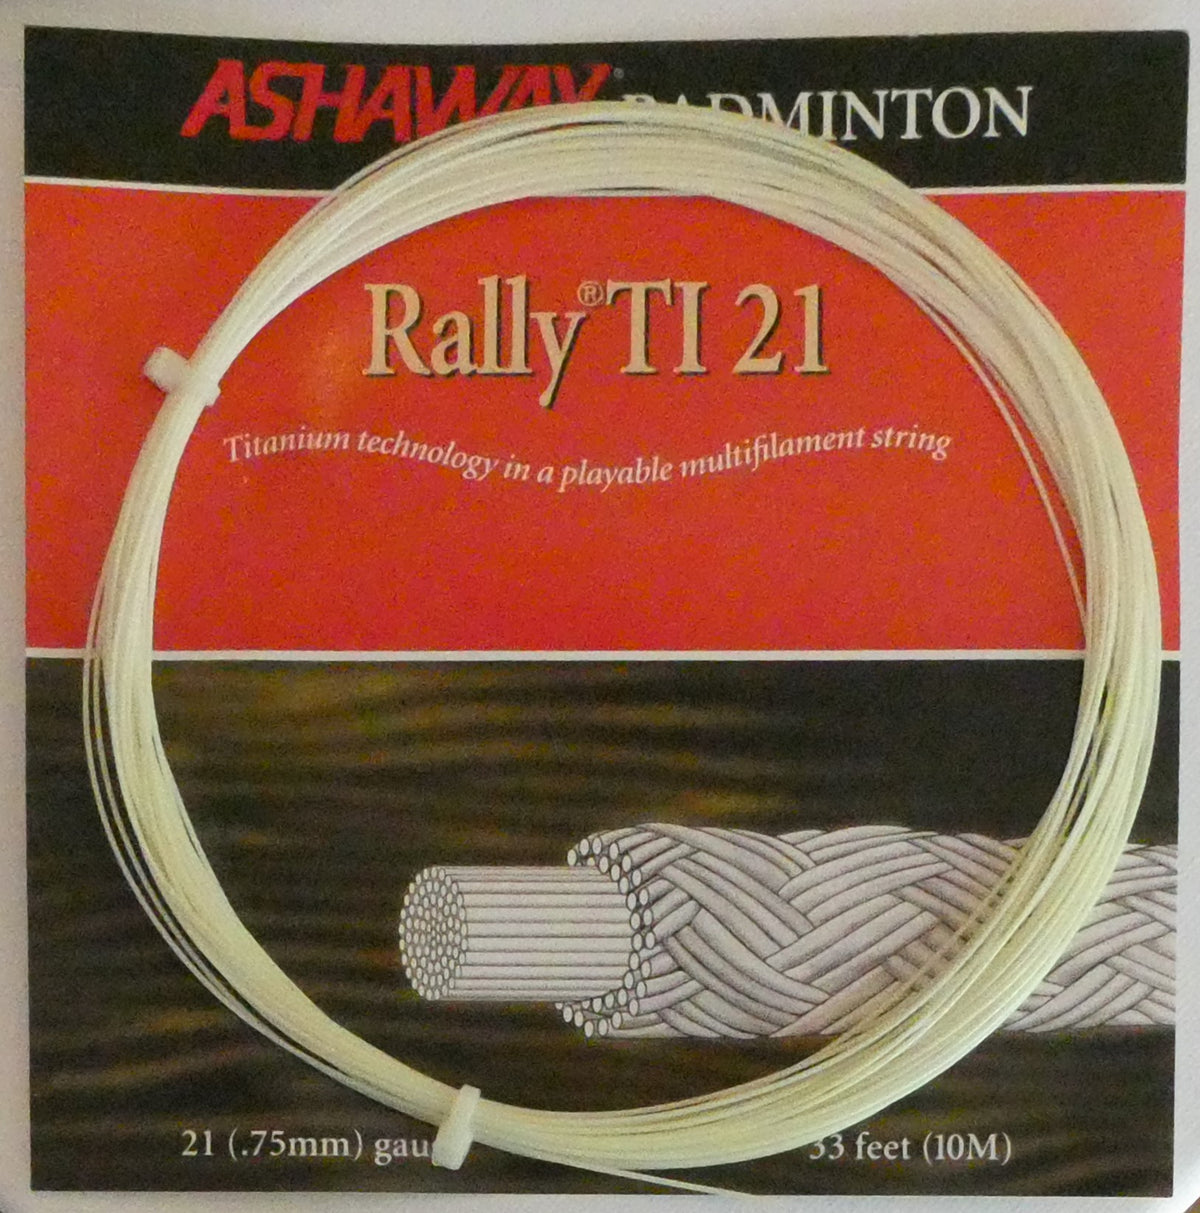 Ashaway Rally Ti 21 Badminton String, White, 10 M SET